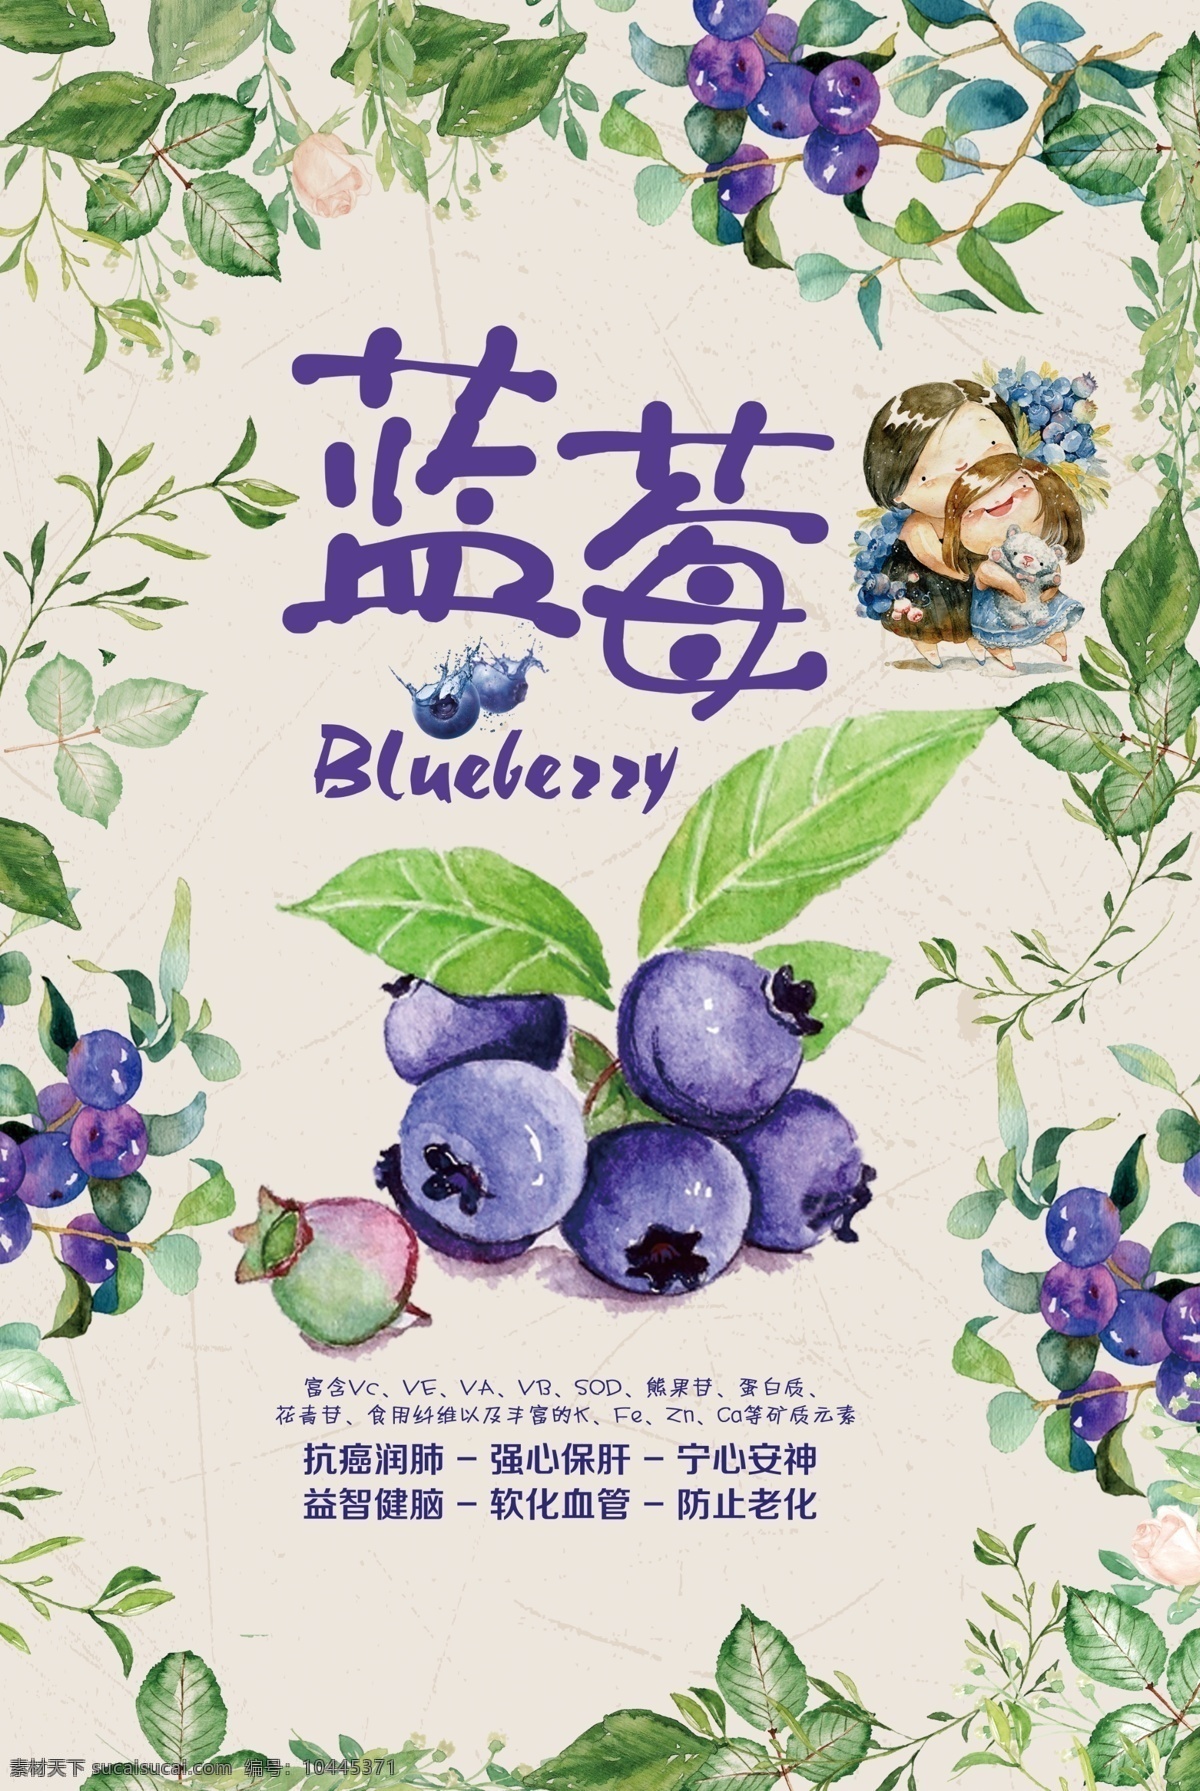 蓝莓海报 美食海报 戴眼镜的蓝莓 对话框 蓝莓素材 虚线格子底纹 蓝莓树枝 创意海报 进口水果 绿色食物 营养健康 清新 简单 新鲜 健康 水果